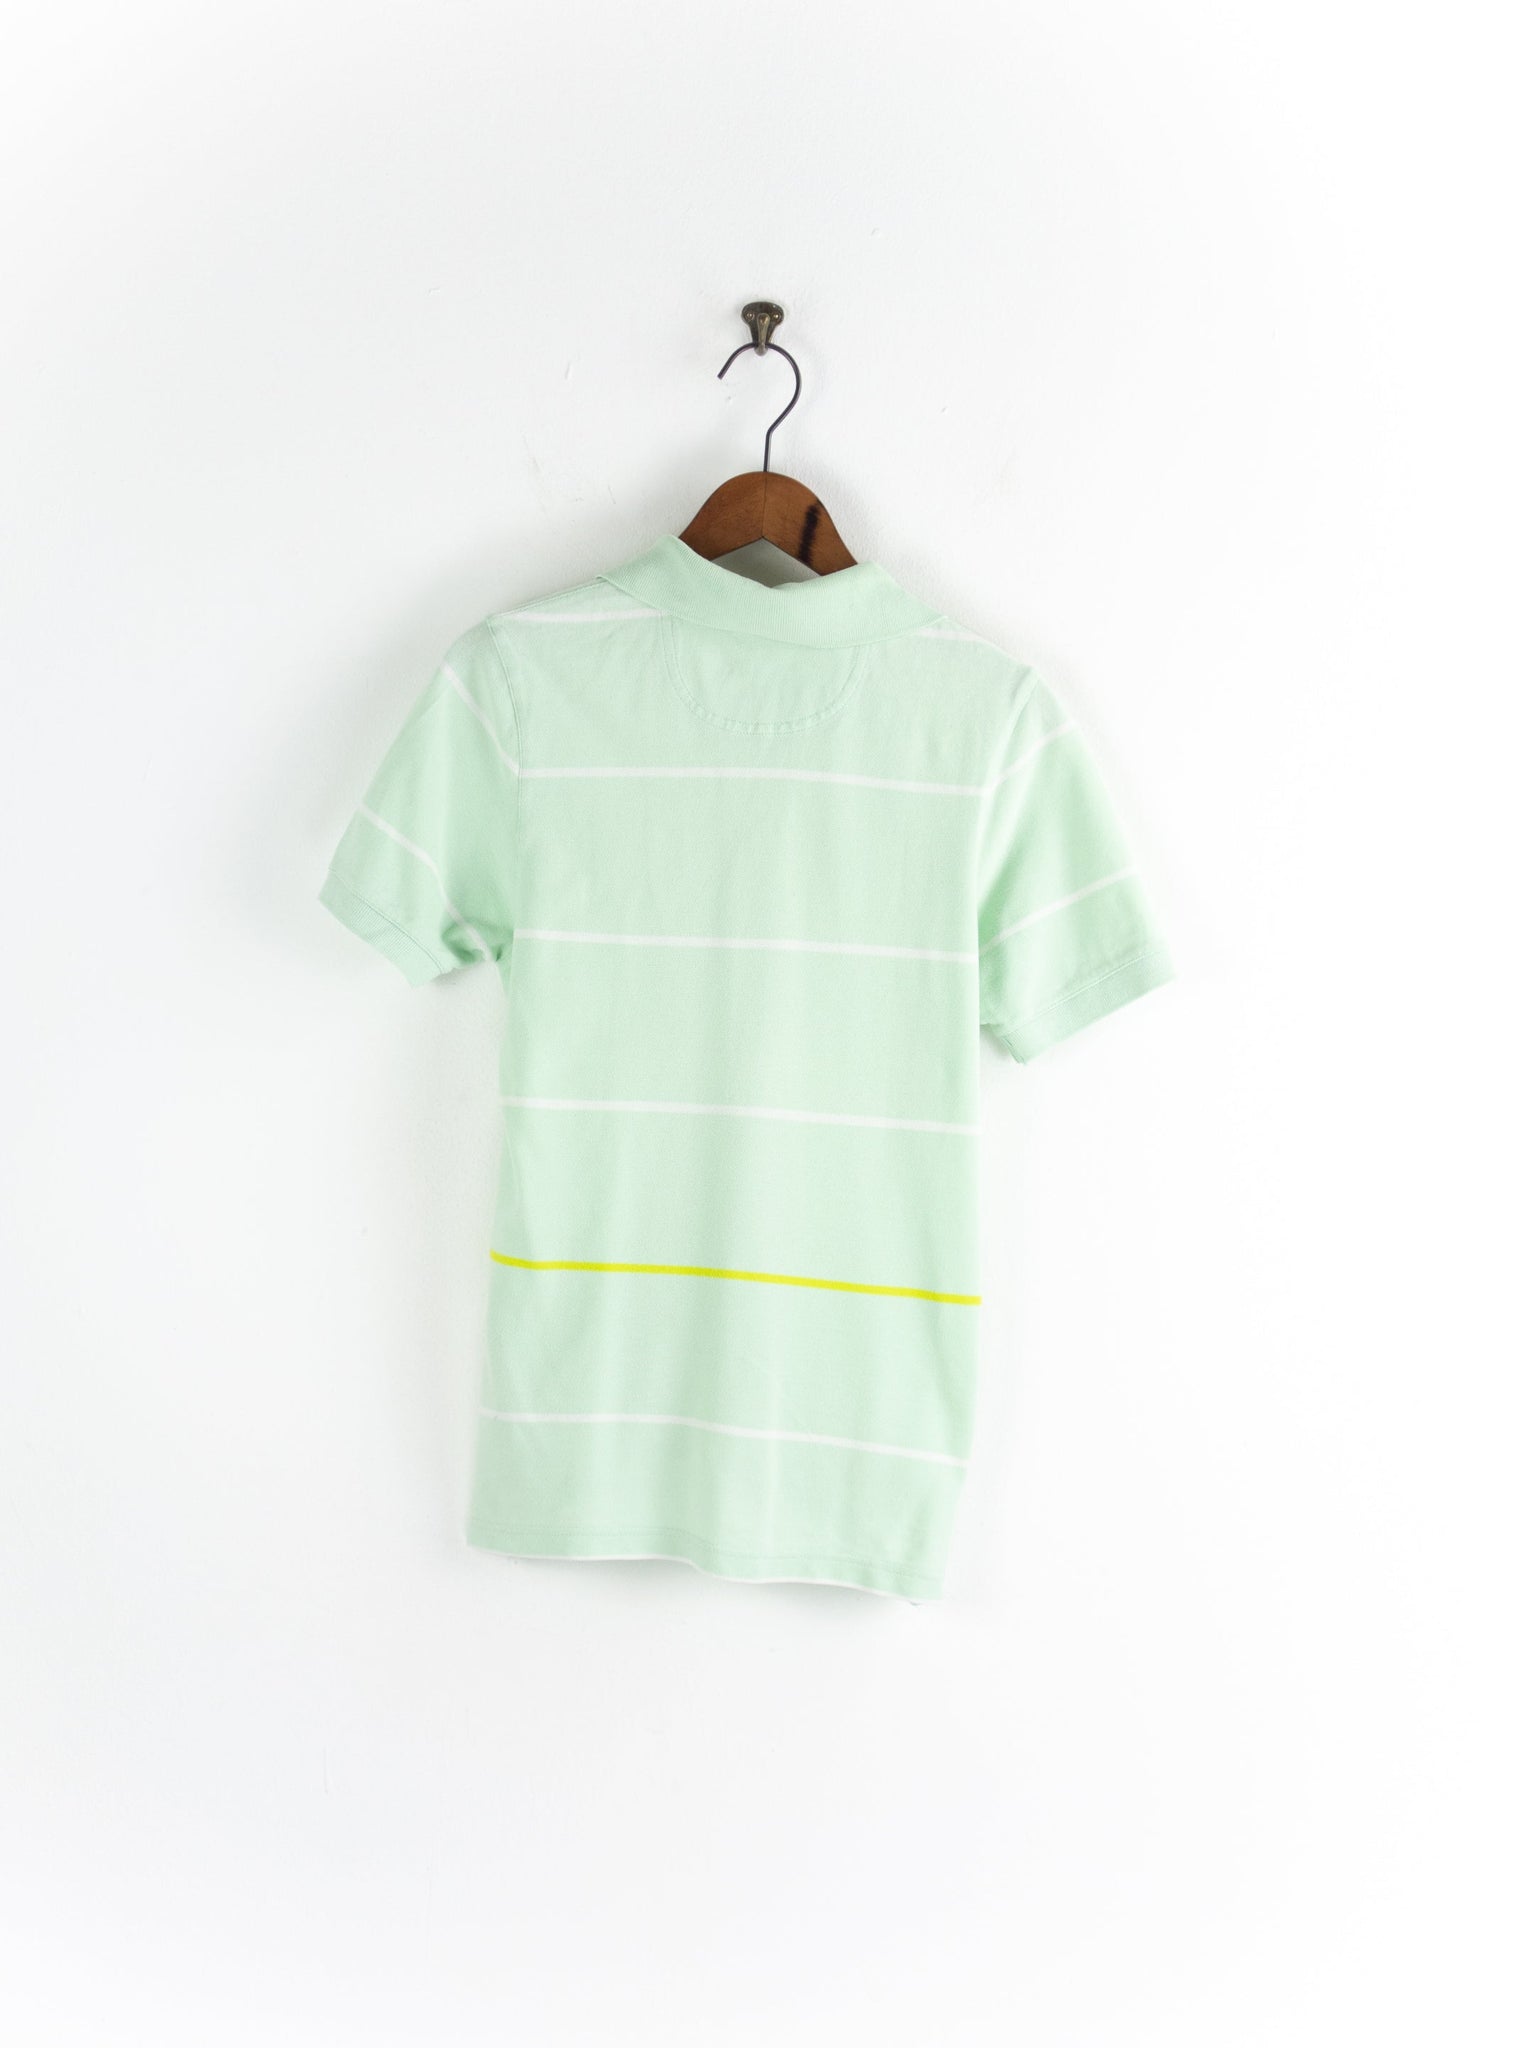 Adidas mintgrünes Poloshirt S